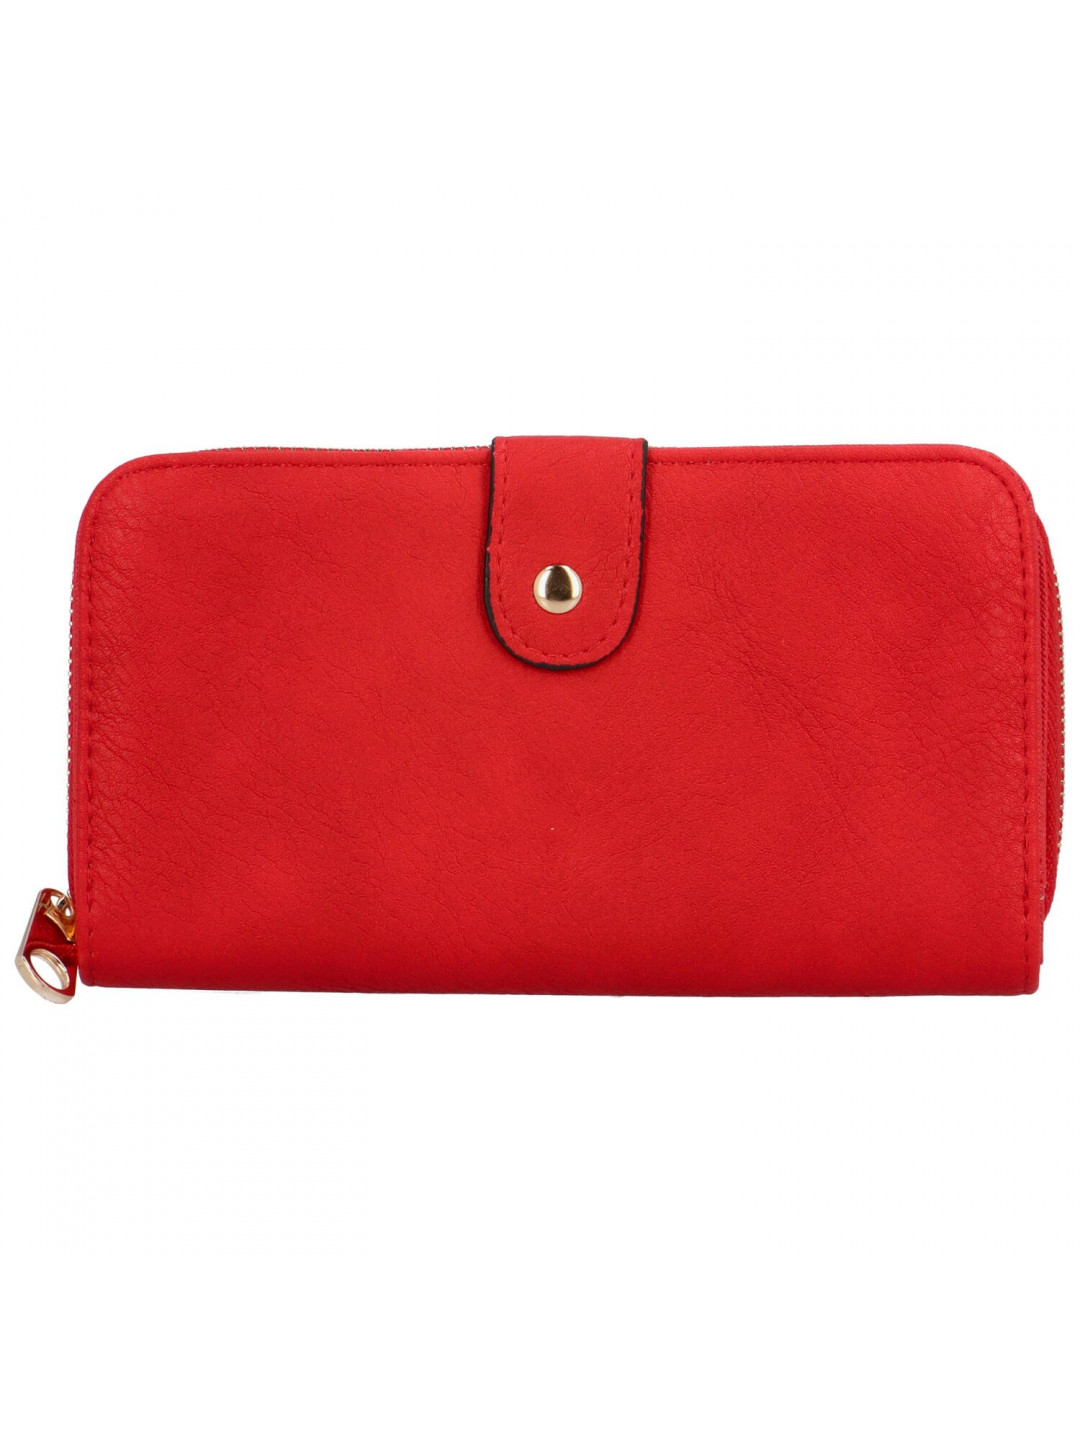 Trendy dámská koženková peněženka Bellina červená